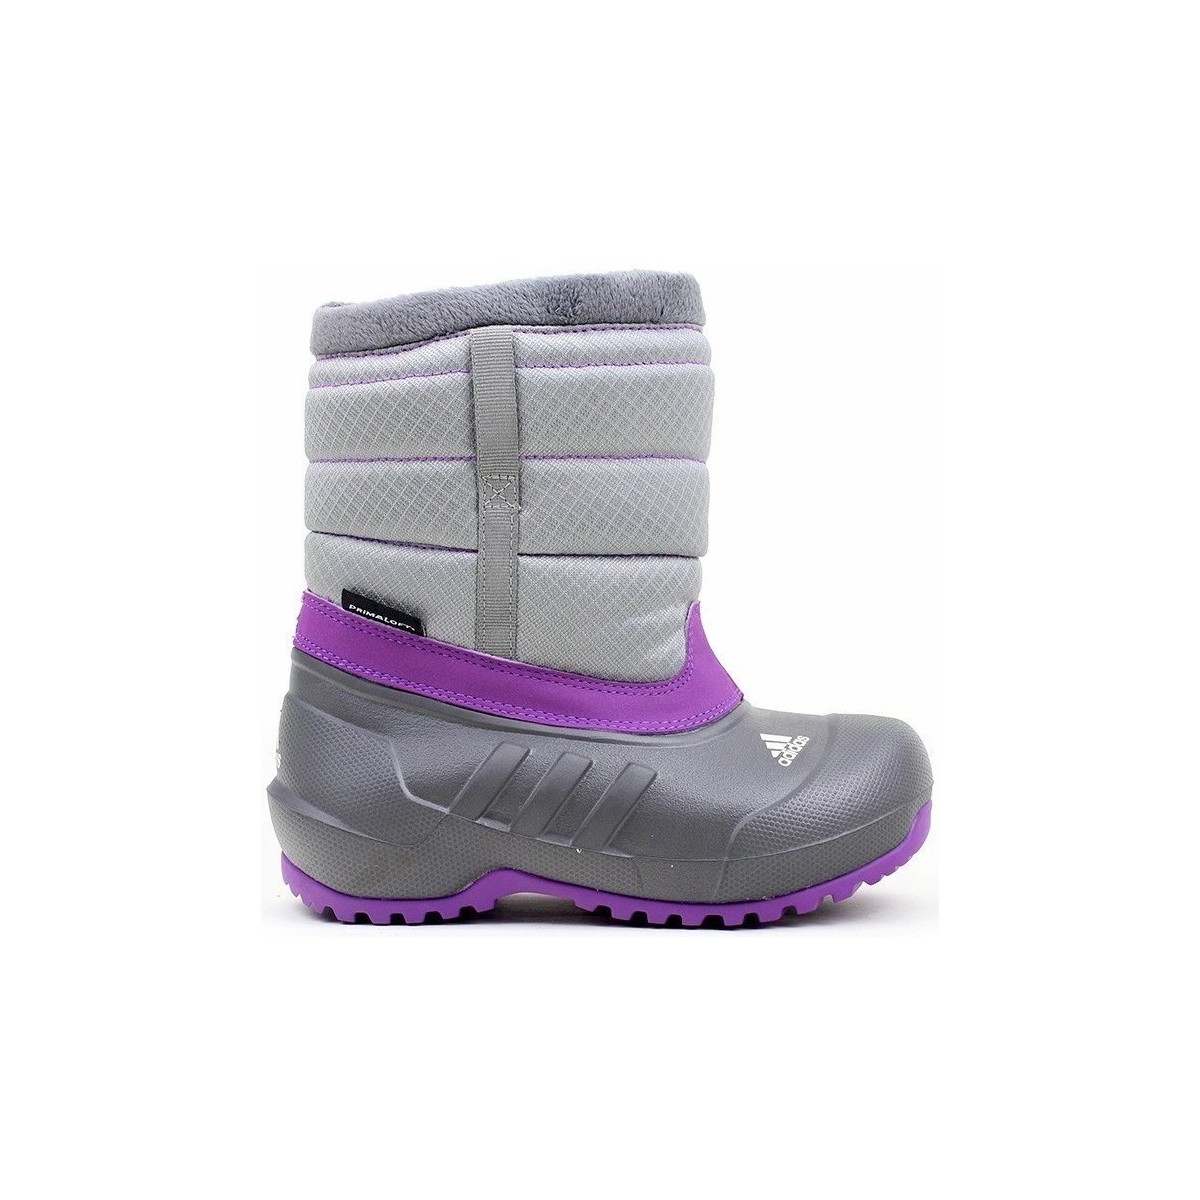 Boty Děti Zimní boty adidas Originals Winterfun Girl Fialové, Šedé